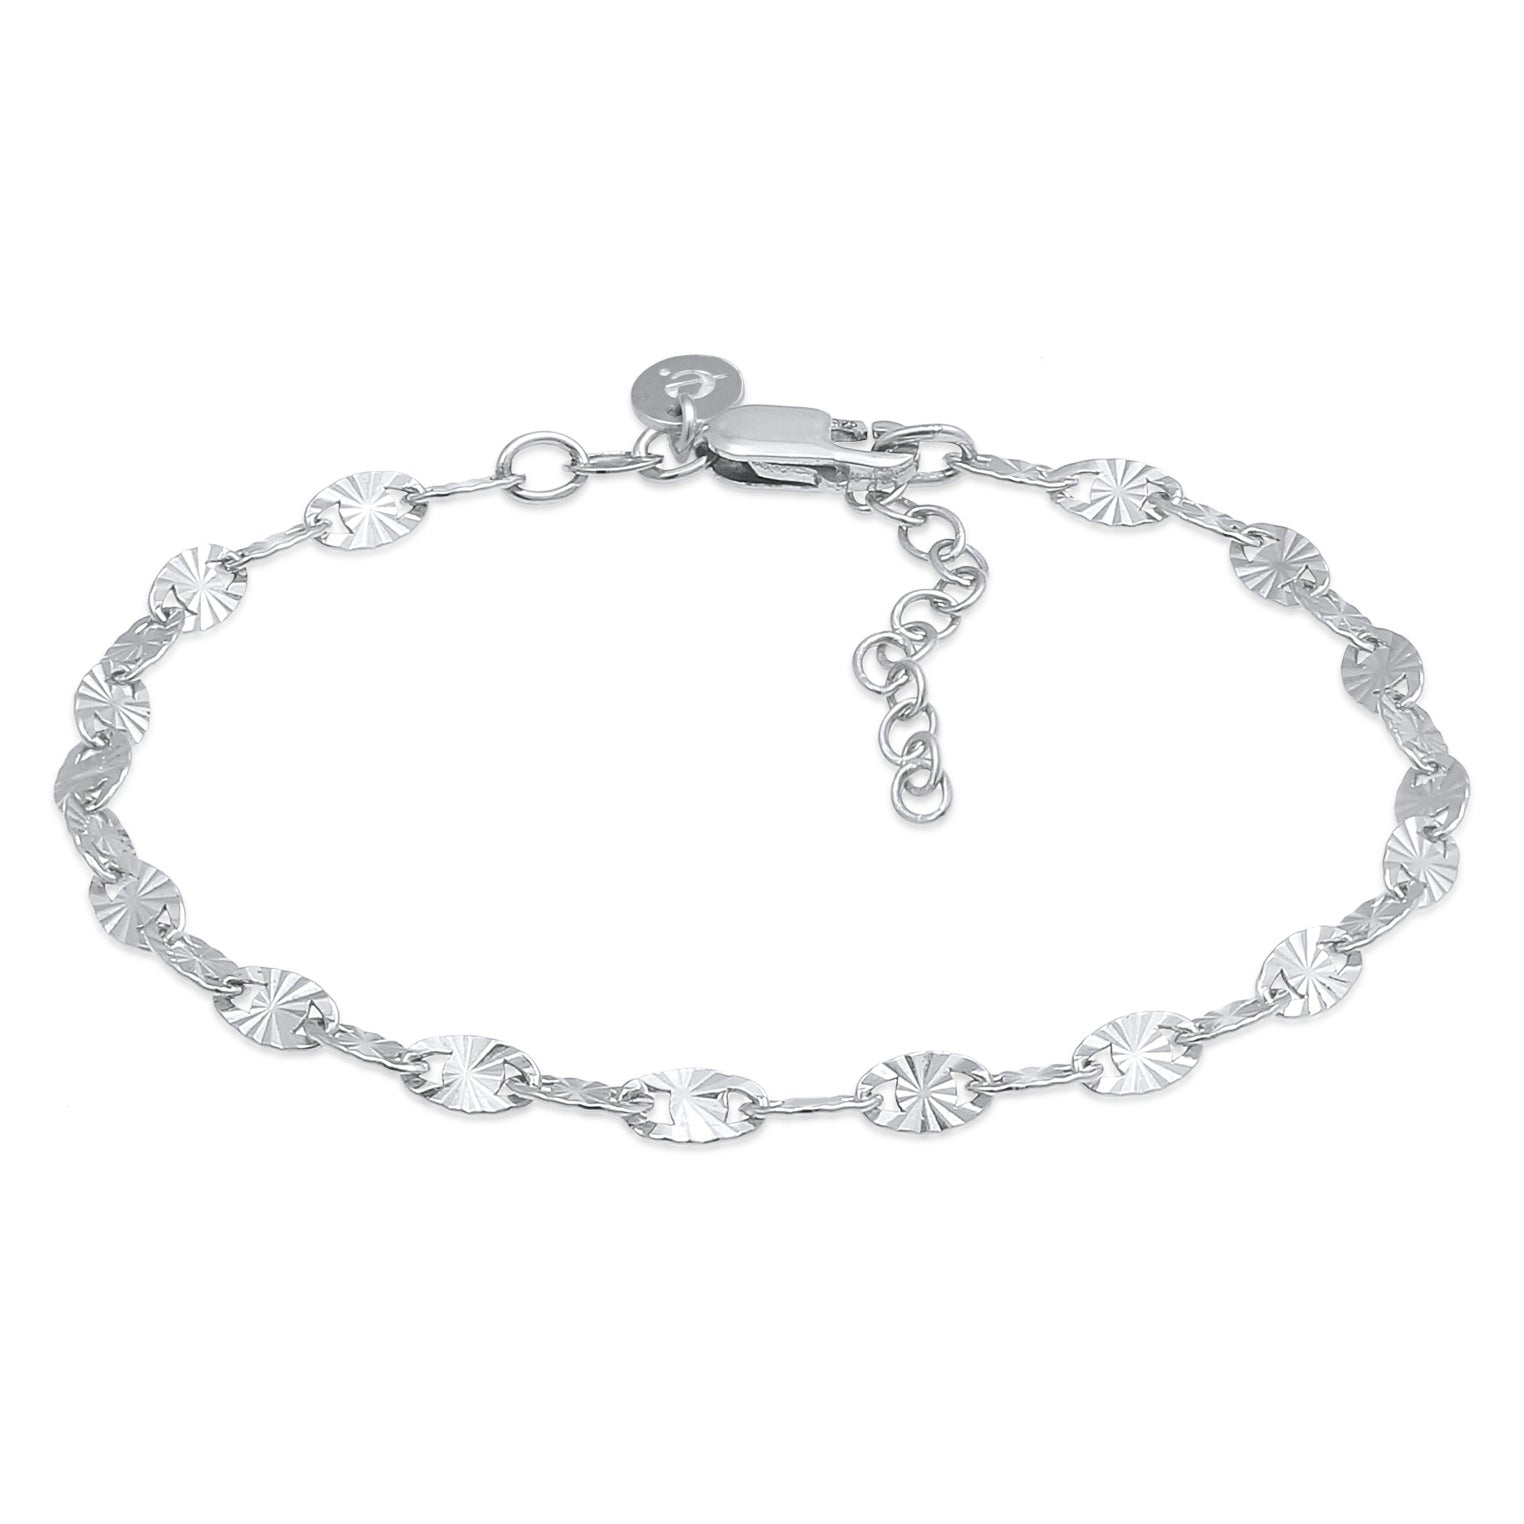 Buy bracelets in Elli\'s – Elli Jewelry online shop